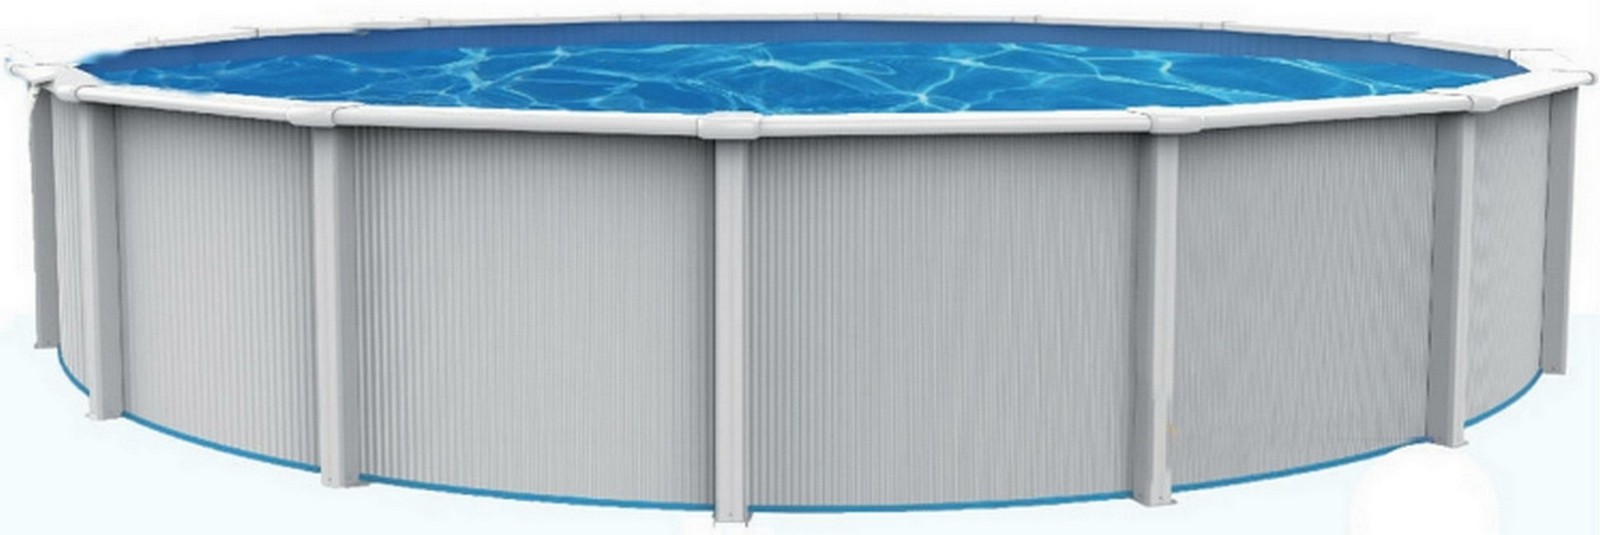 Купить Морозоустойчивый бассейн Poolmagic Sky круглый 550x130 см, комплект Standart (фильтр IntexBestway),